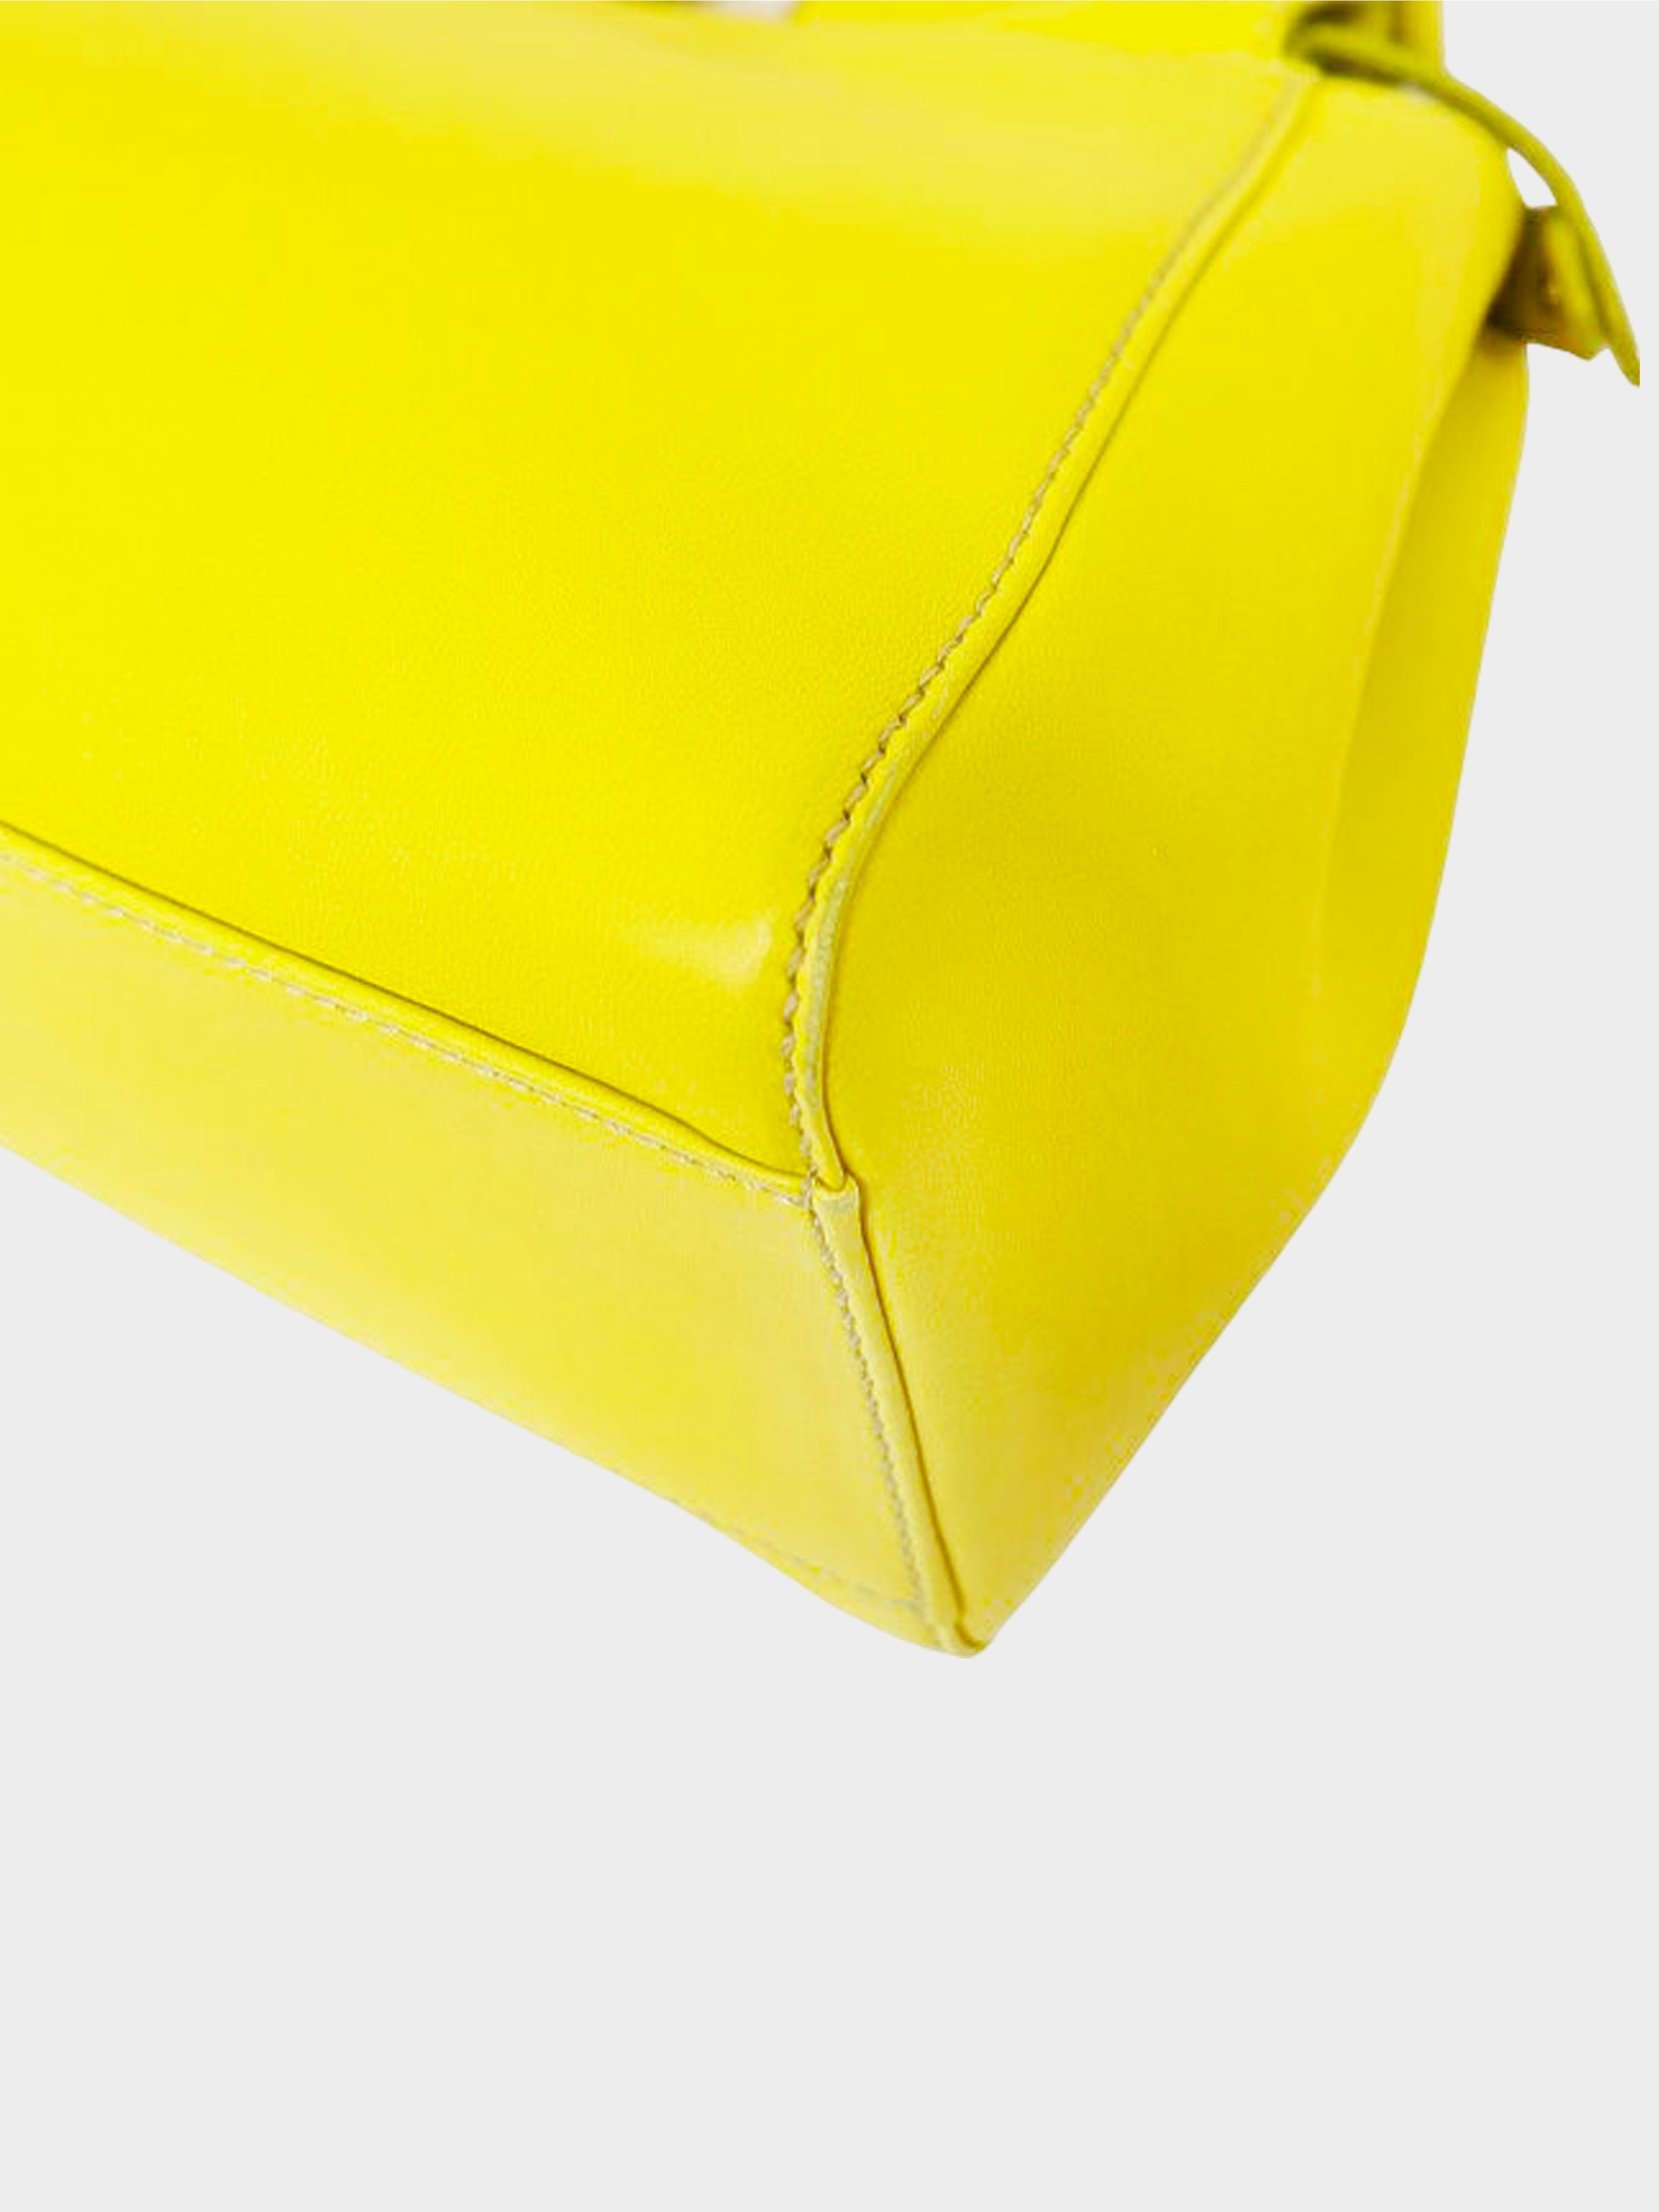 Fendi 2010s Yellow Nappa Mini Peekaboo Bag